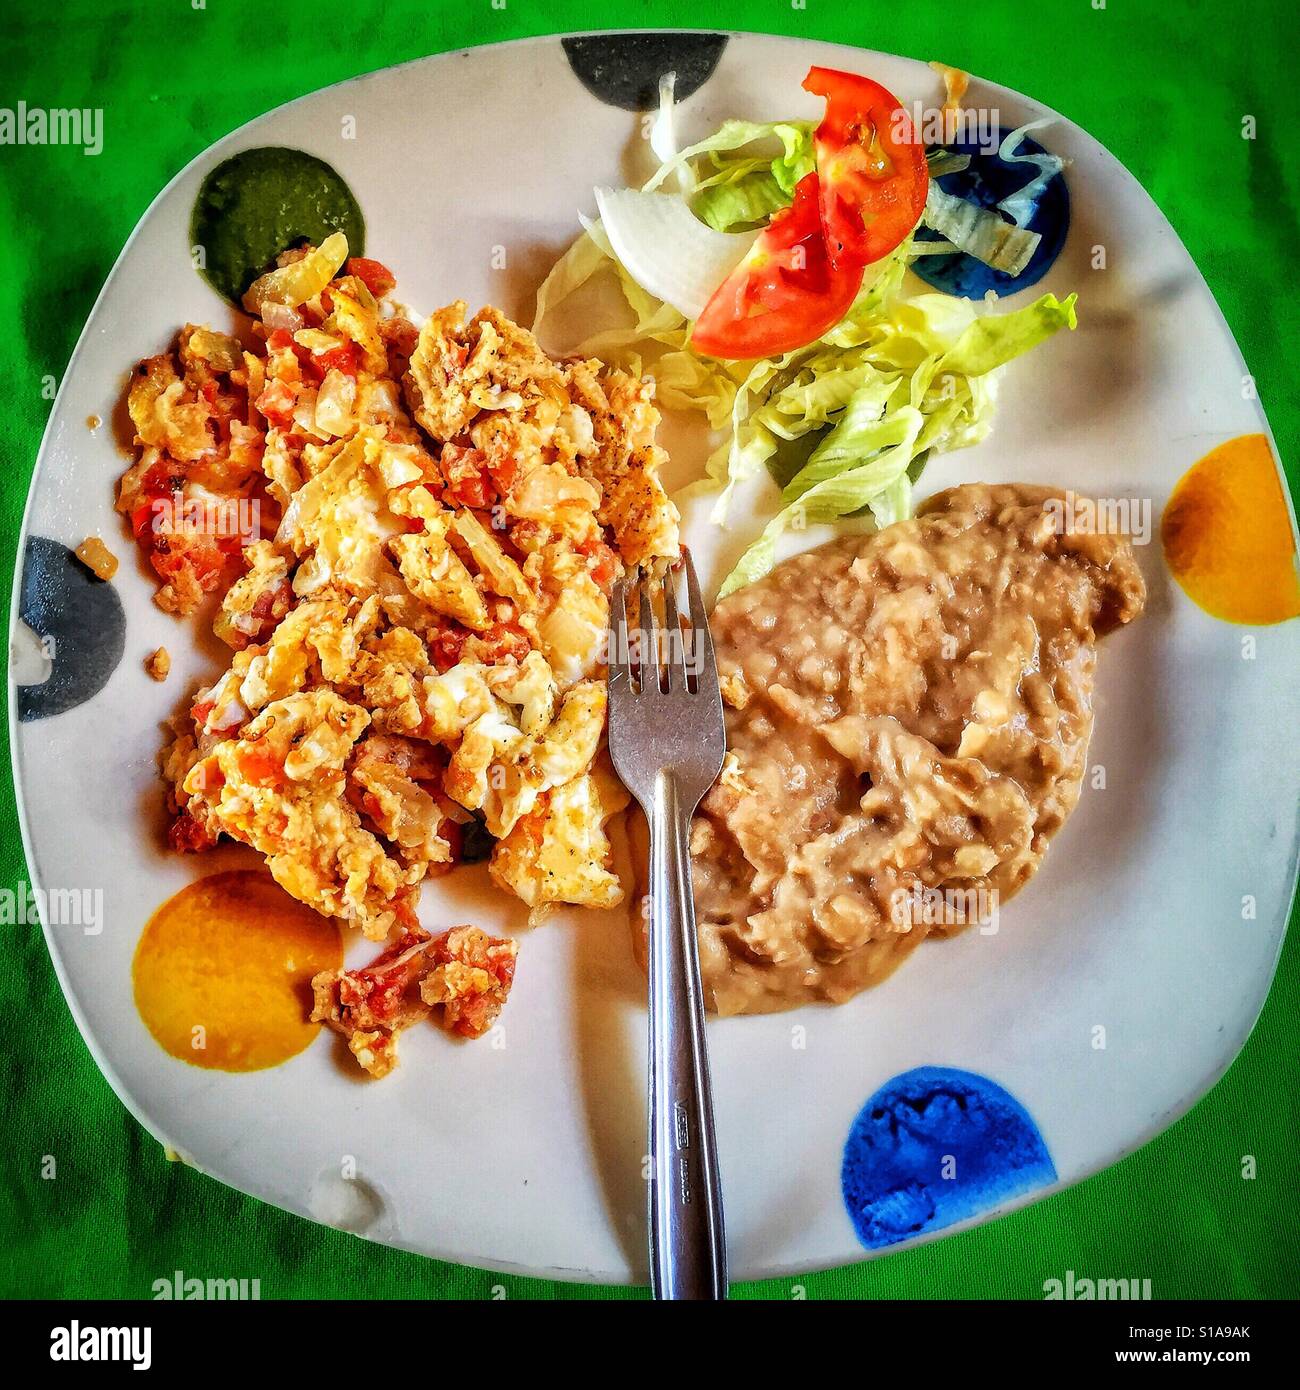 Ein bunten Teller bemalt mit riesigen Polka Dots ist gefüllt mit ein traditionelles mexikanisches Frühstück Huevos Mexicanos, gebackenen Bohnen und einen Salat garnieren. Stockfoto